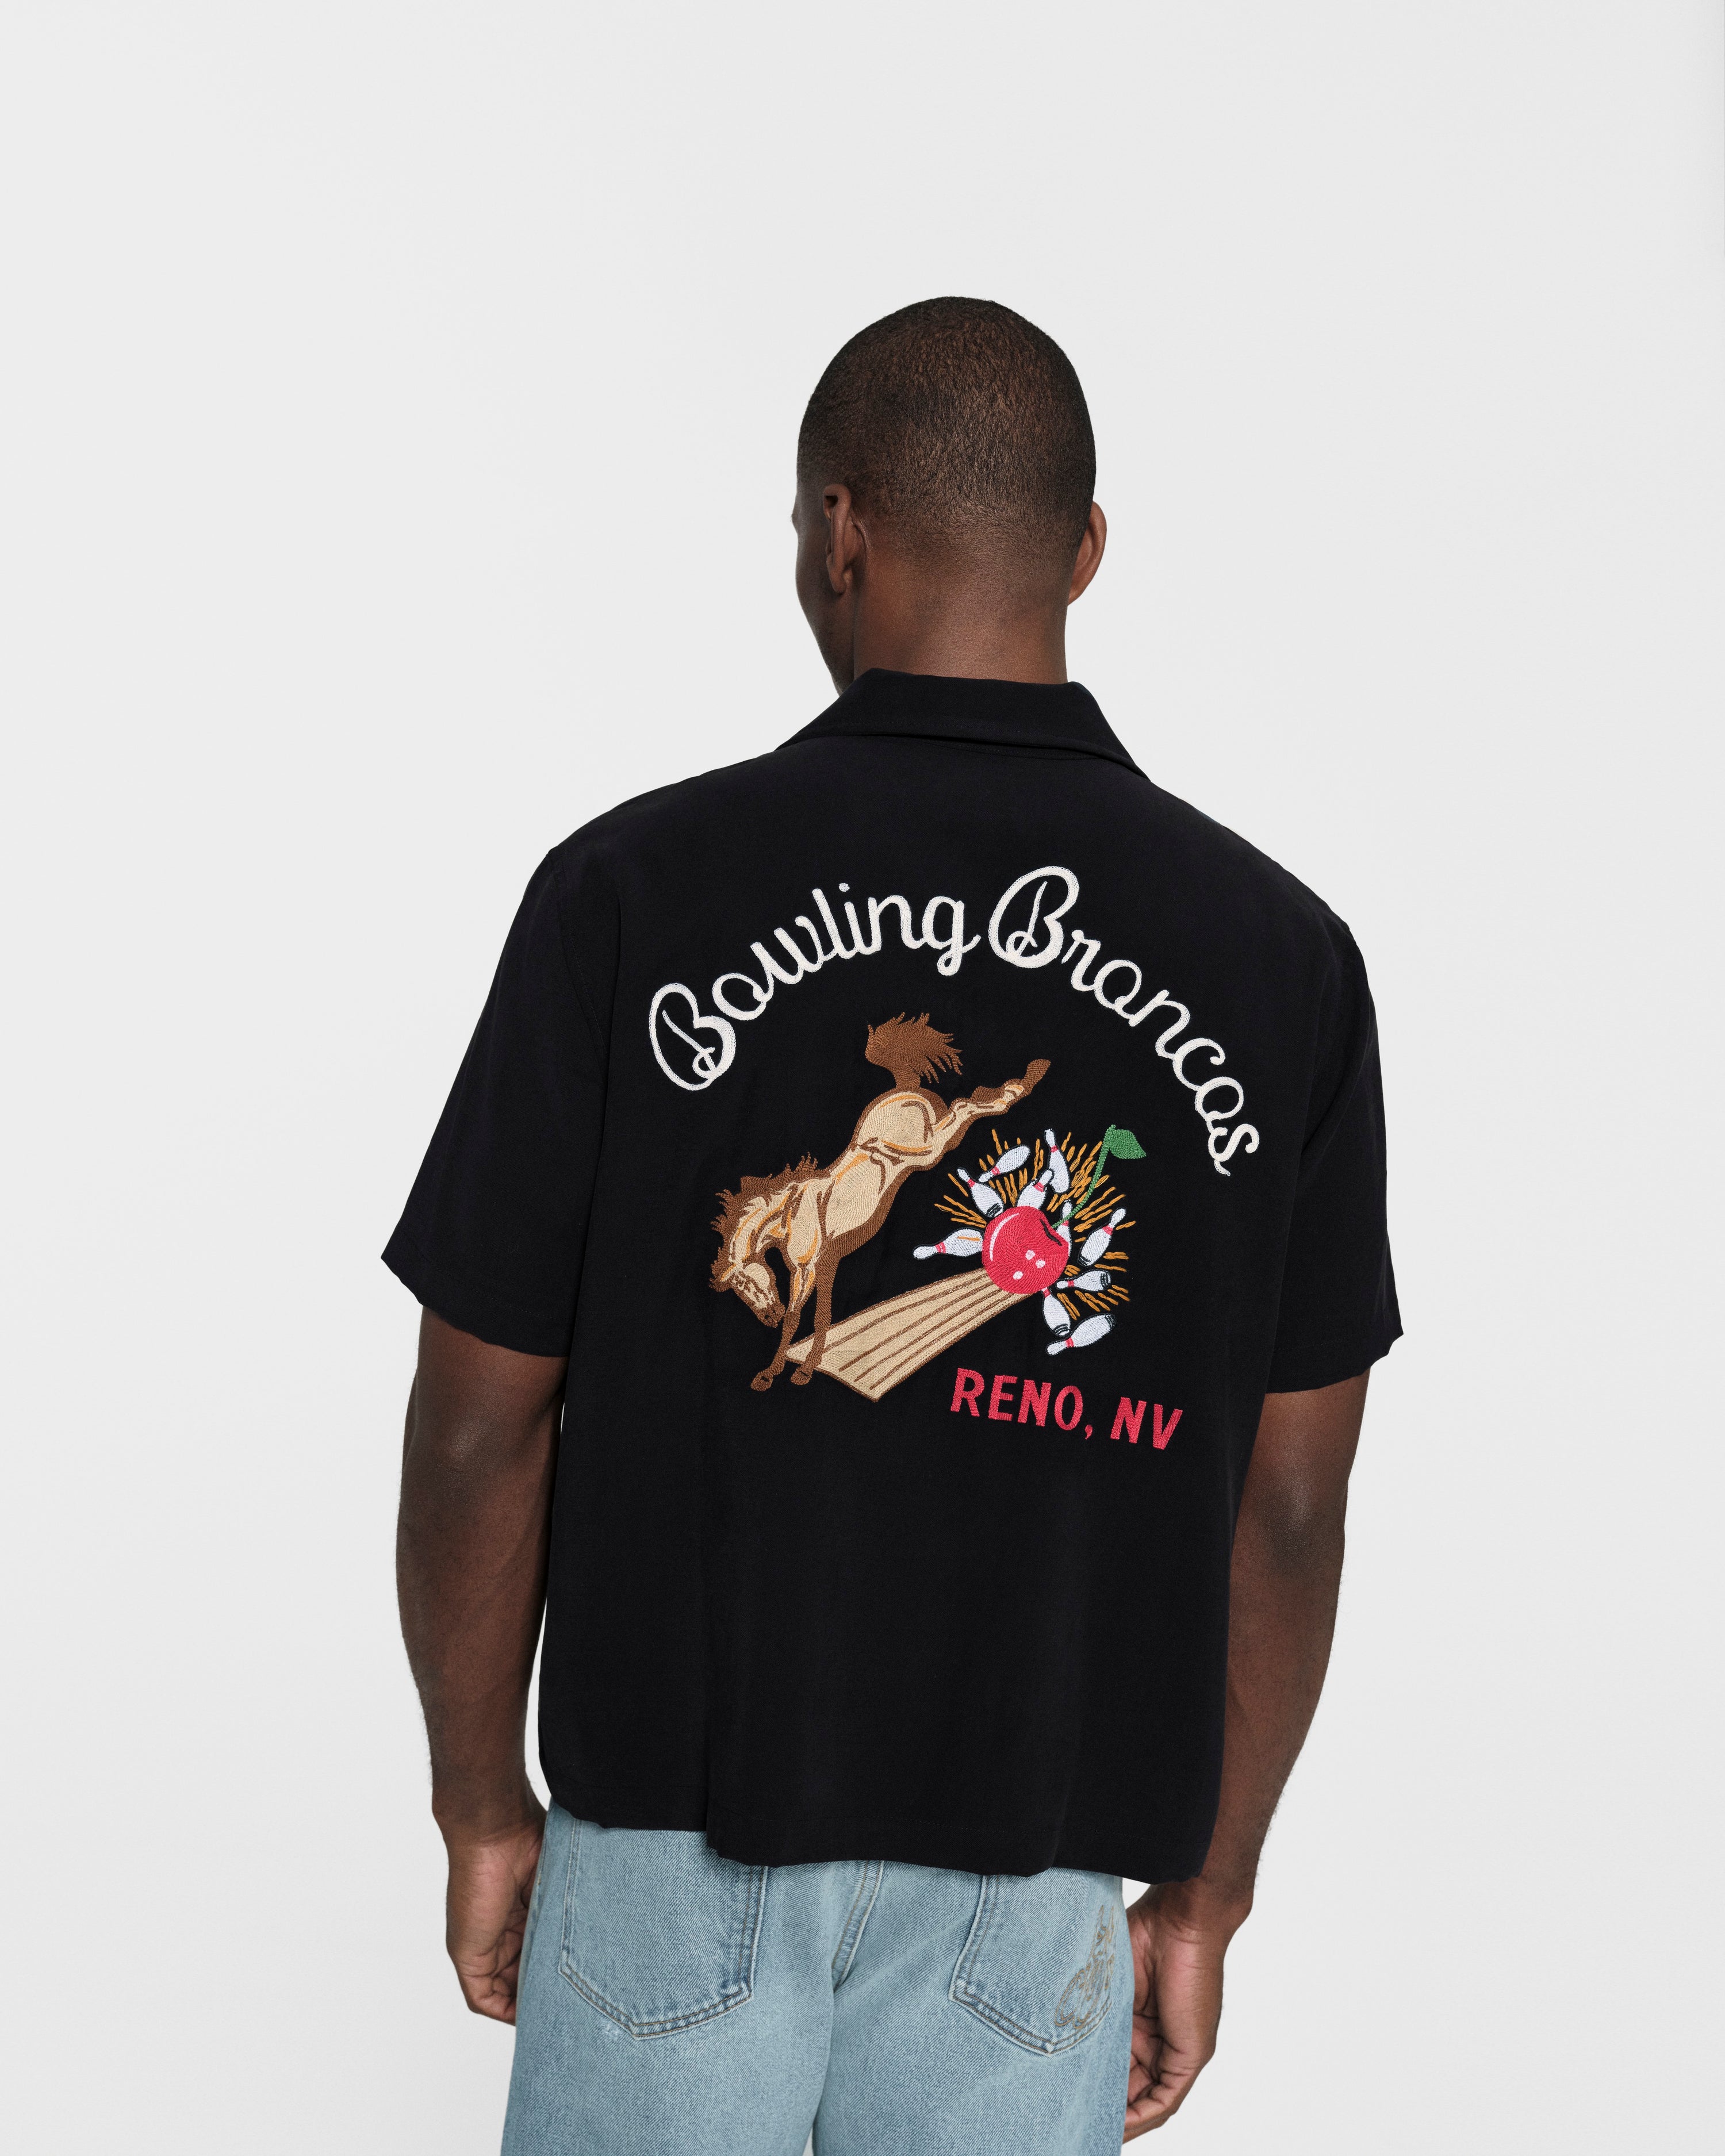 Bowling Broncos Bowling Shirt (Black)